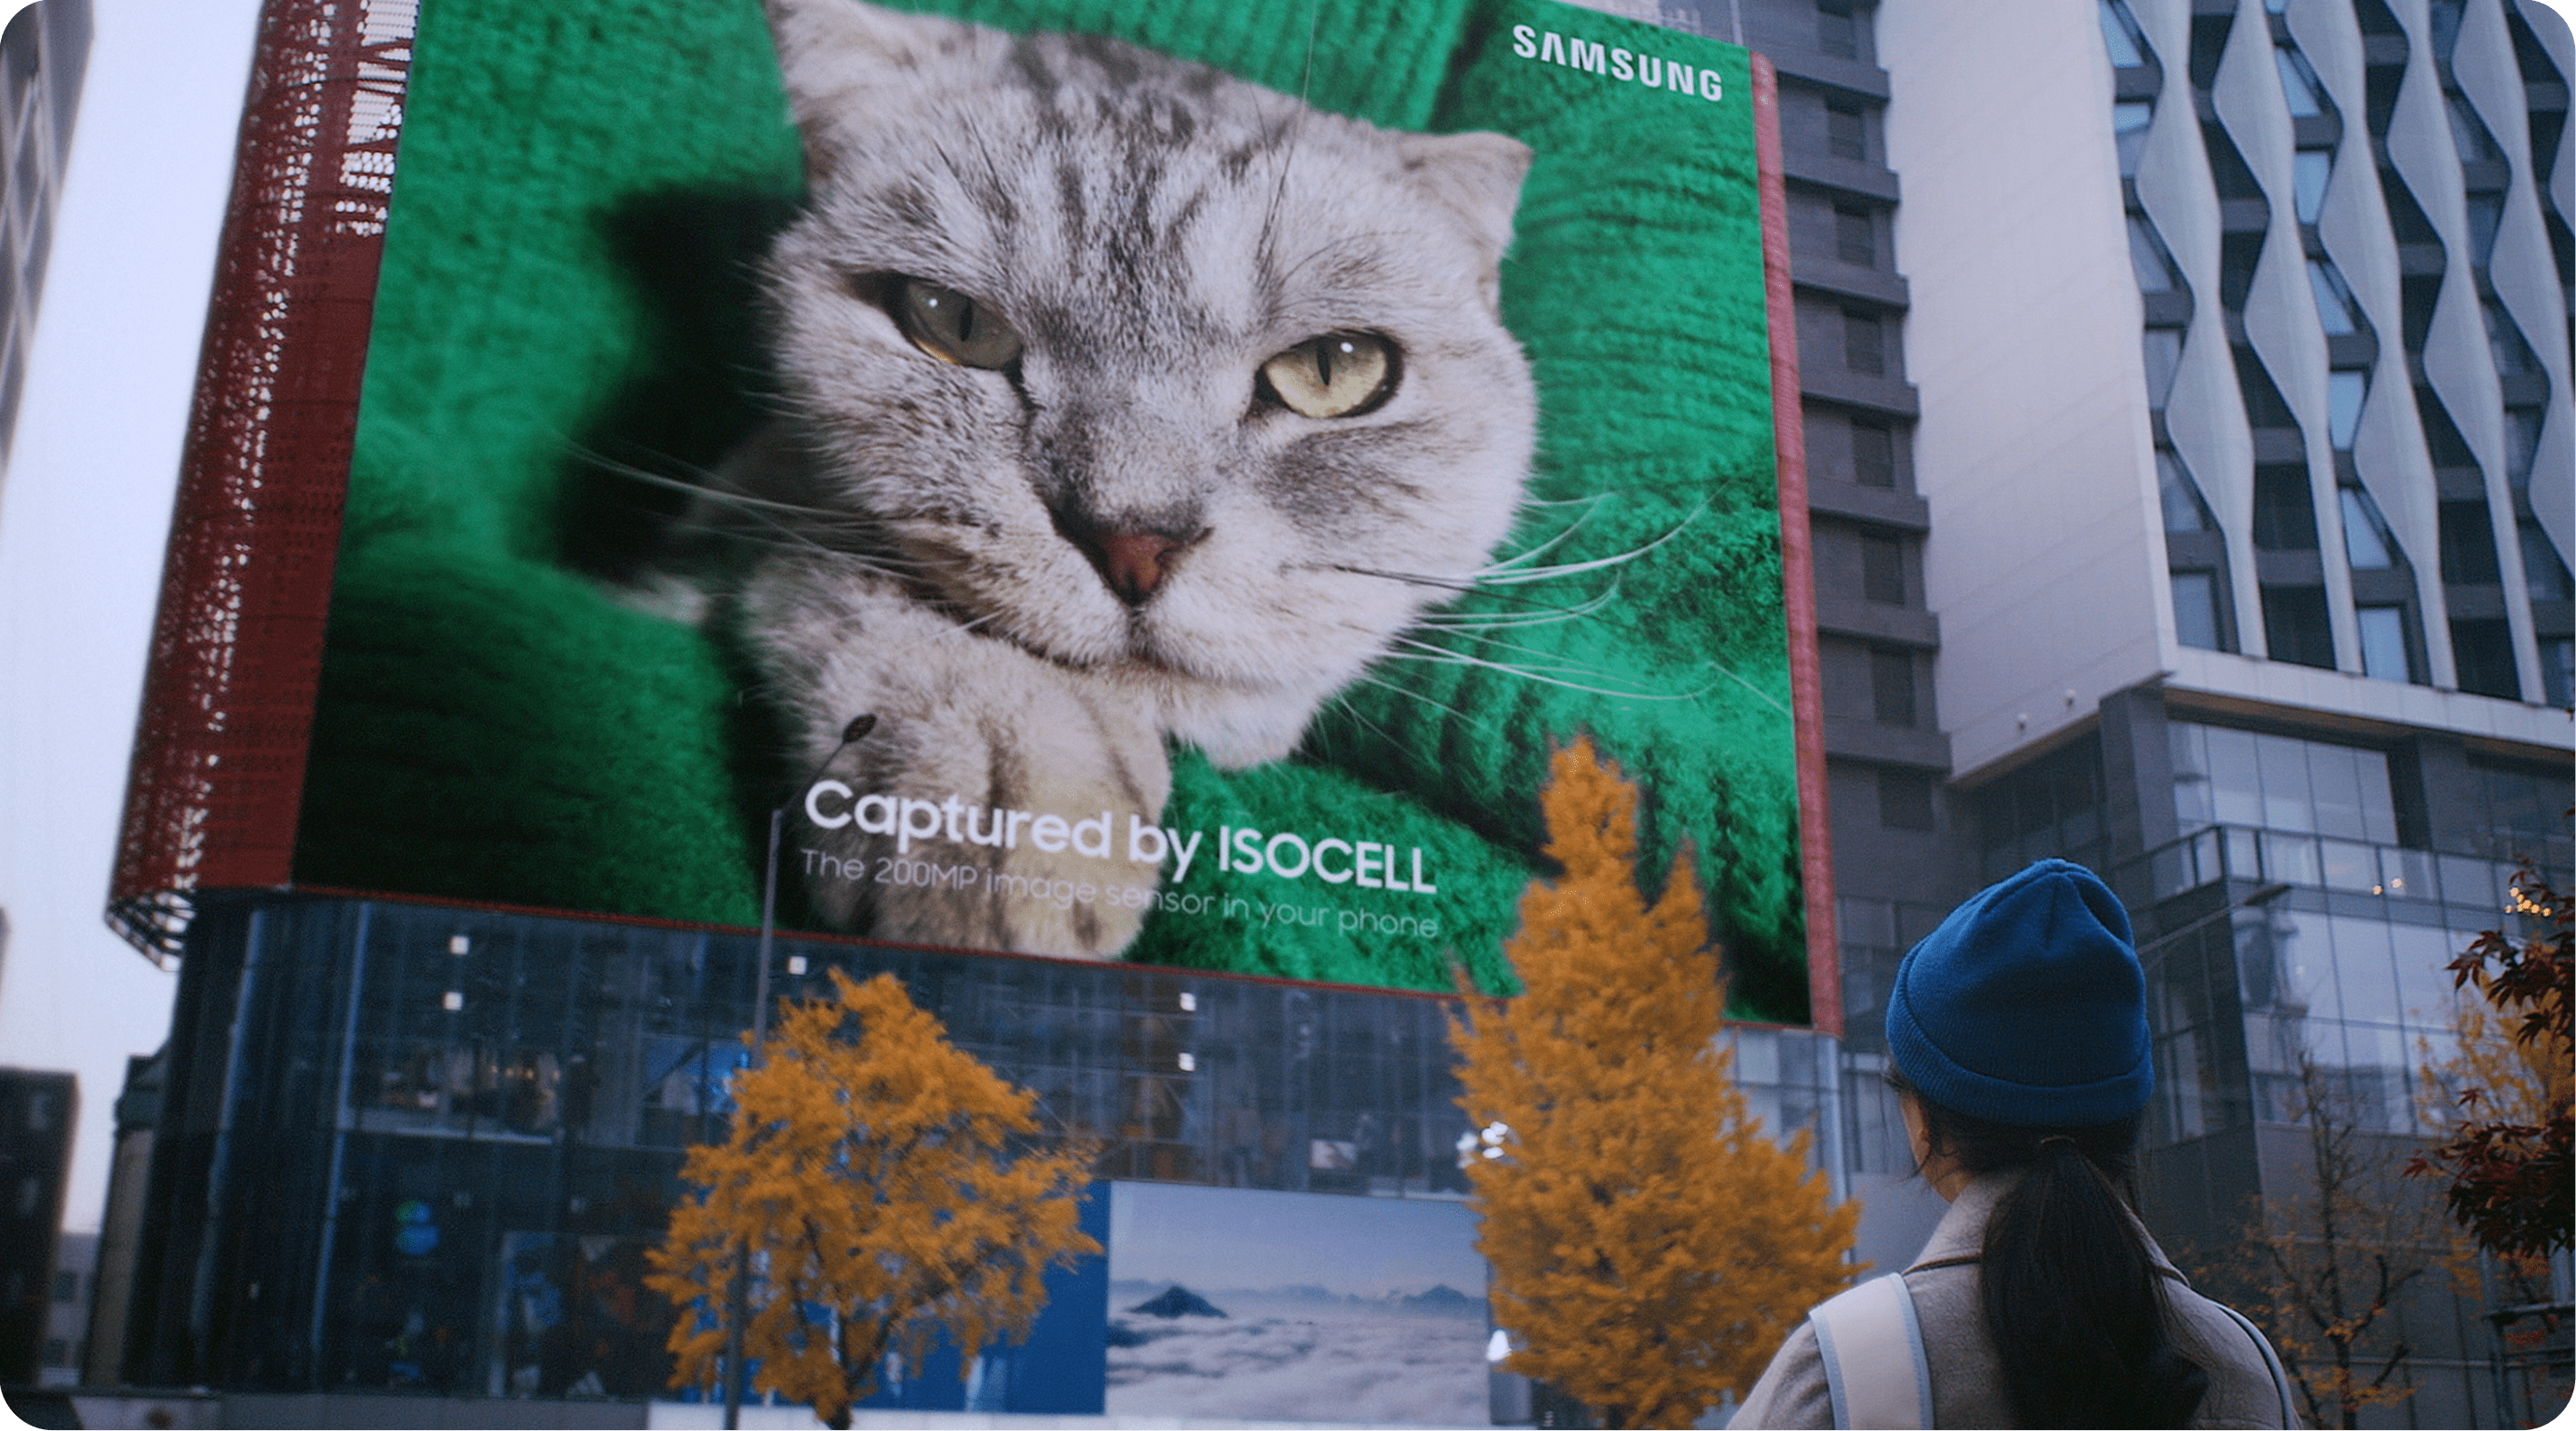 빌딩에 게시된 2억 화소 아이소셀 이미지센서로 만든 초대형 고양이 인쇄물